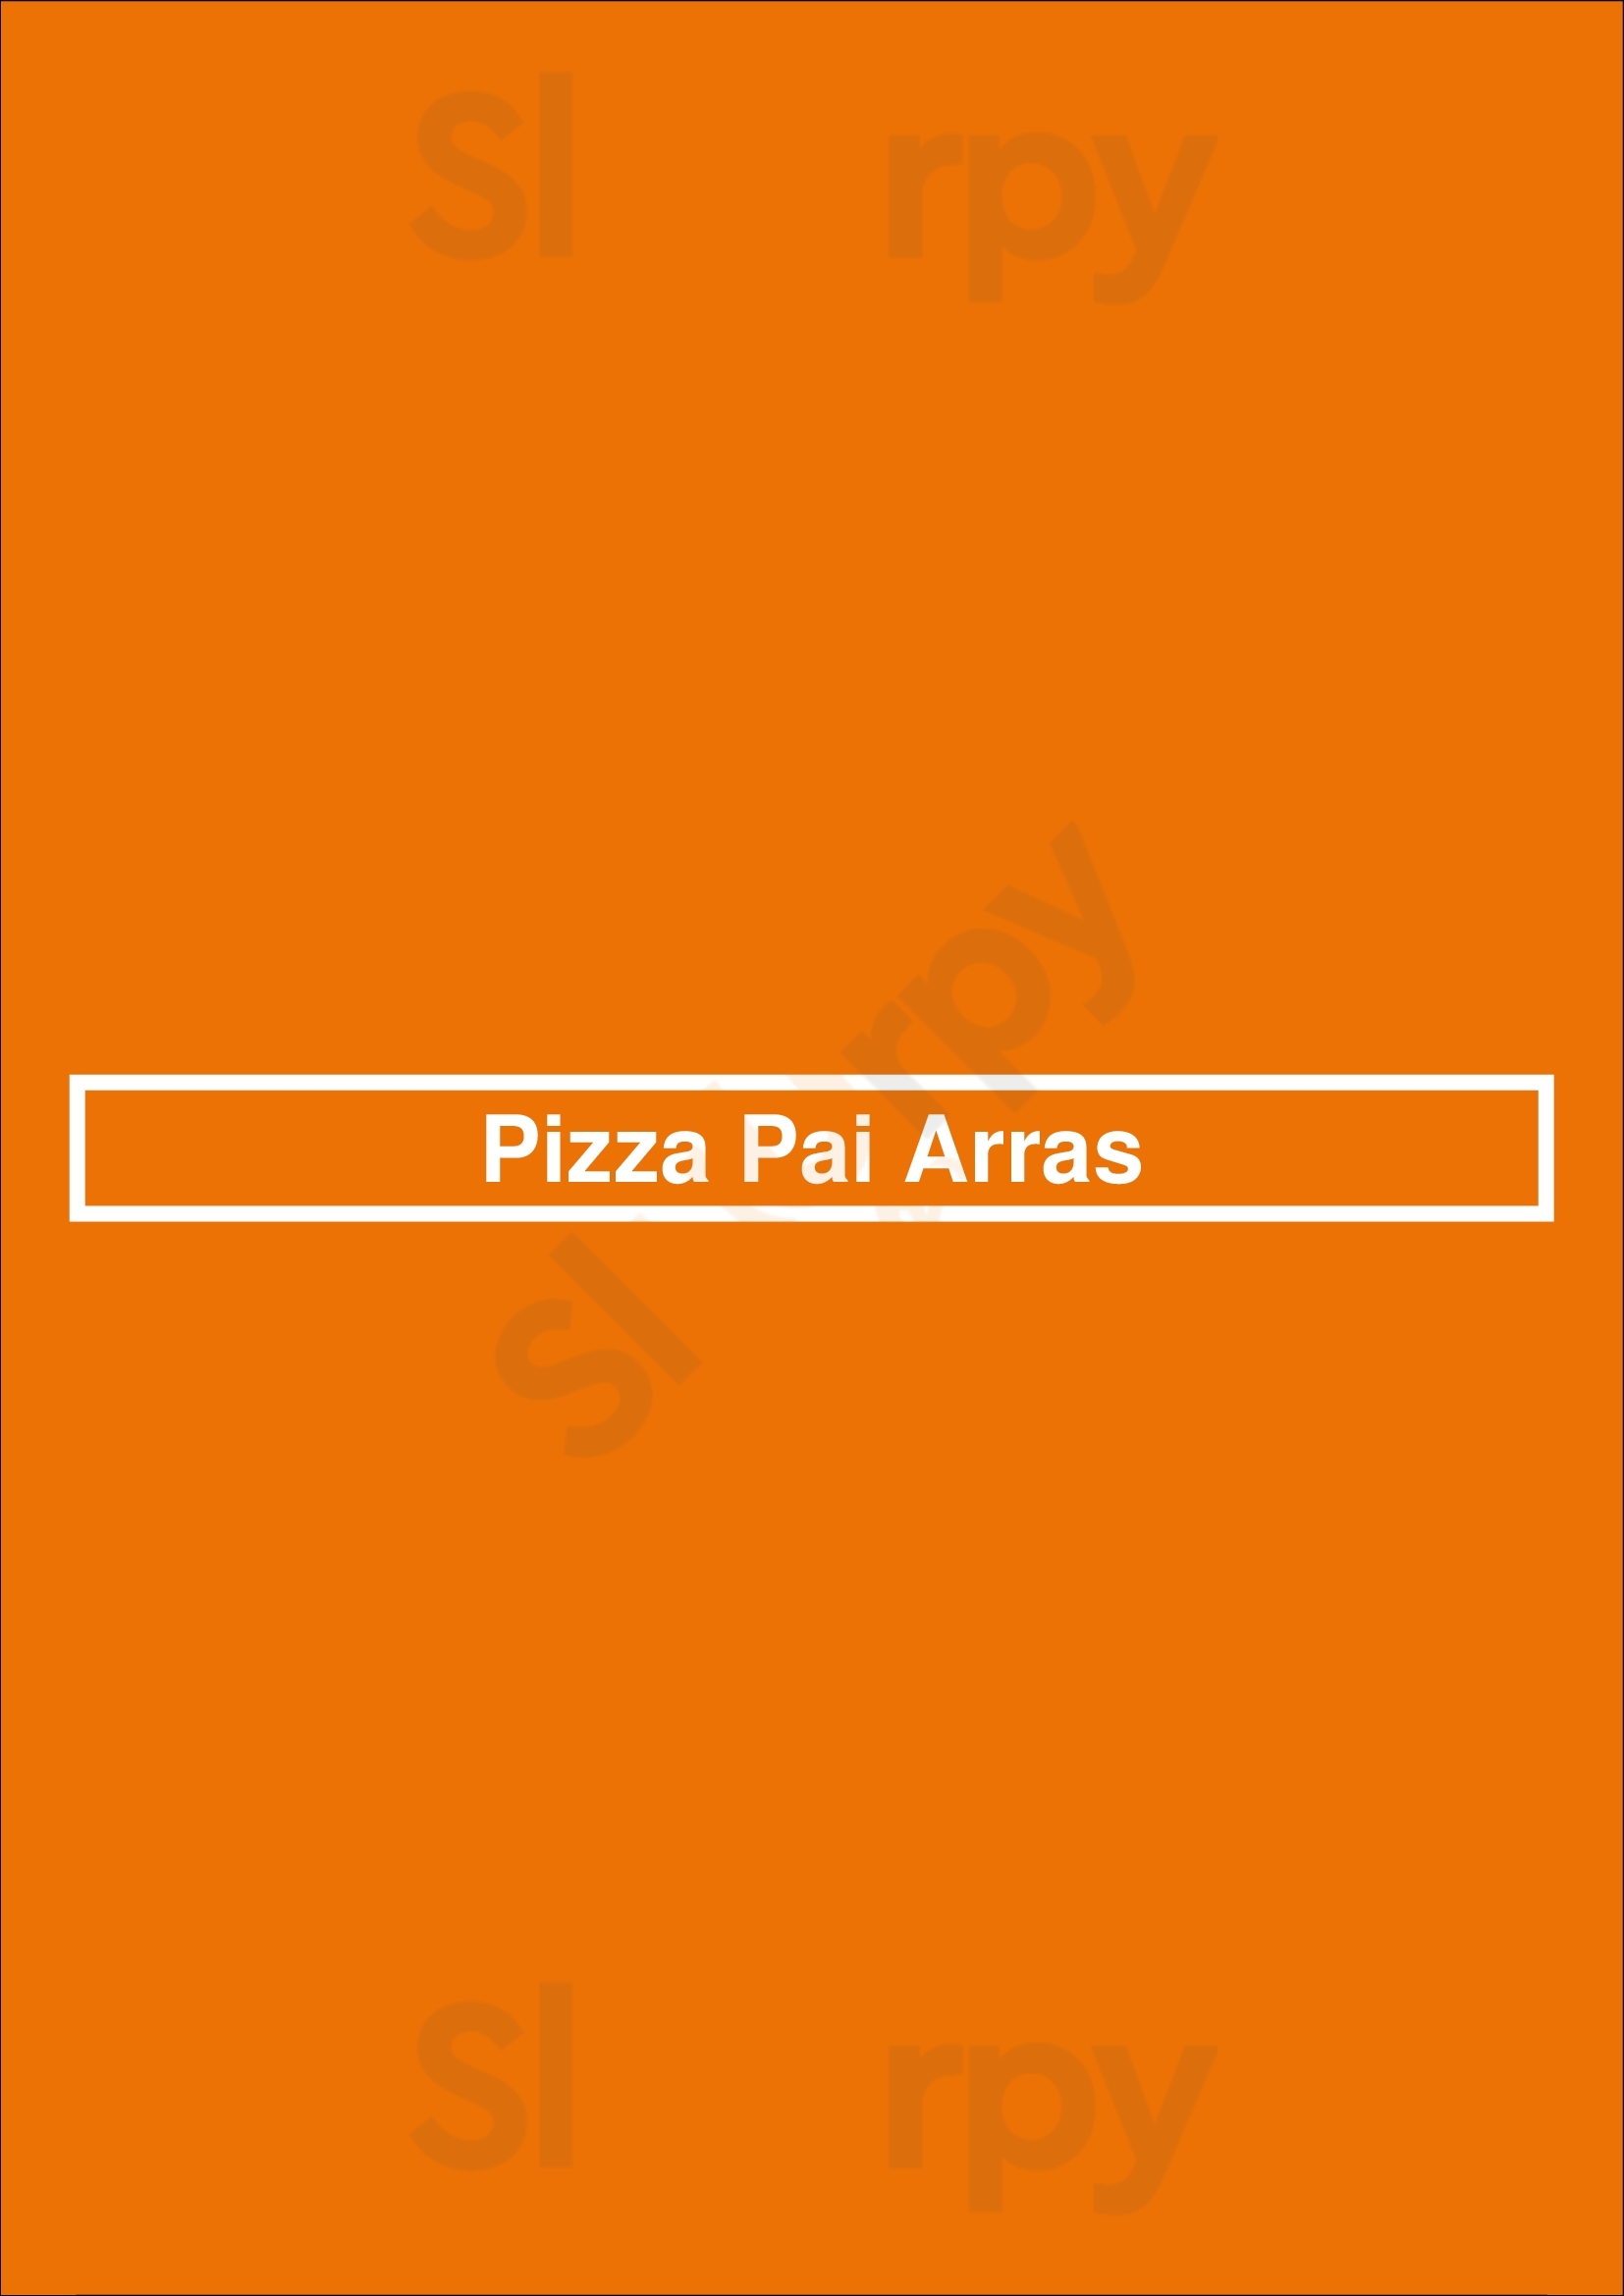 Pizza Pai Arras Arras Menu - 1